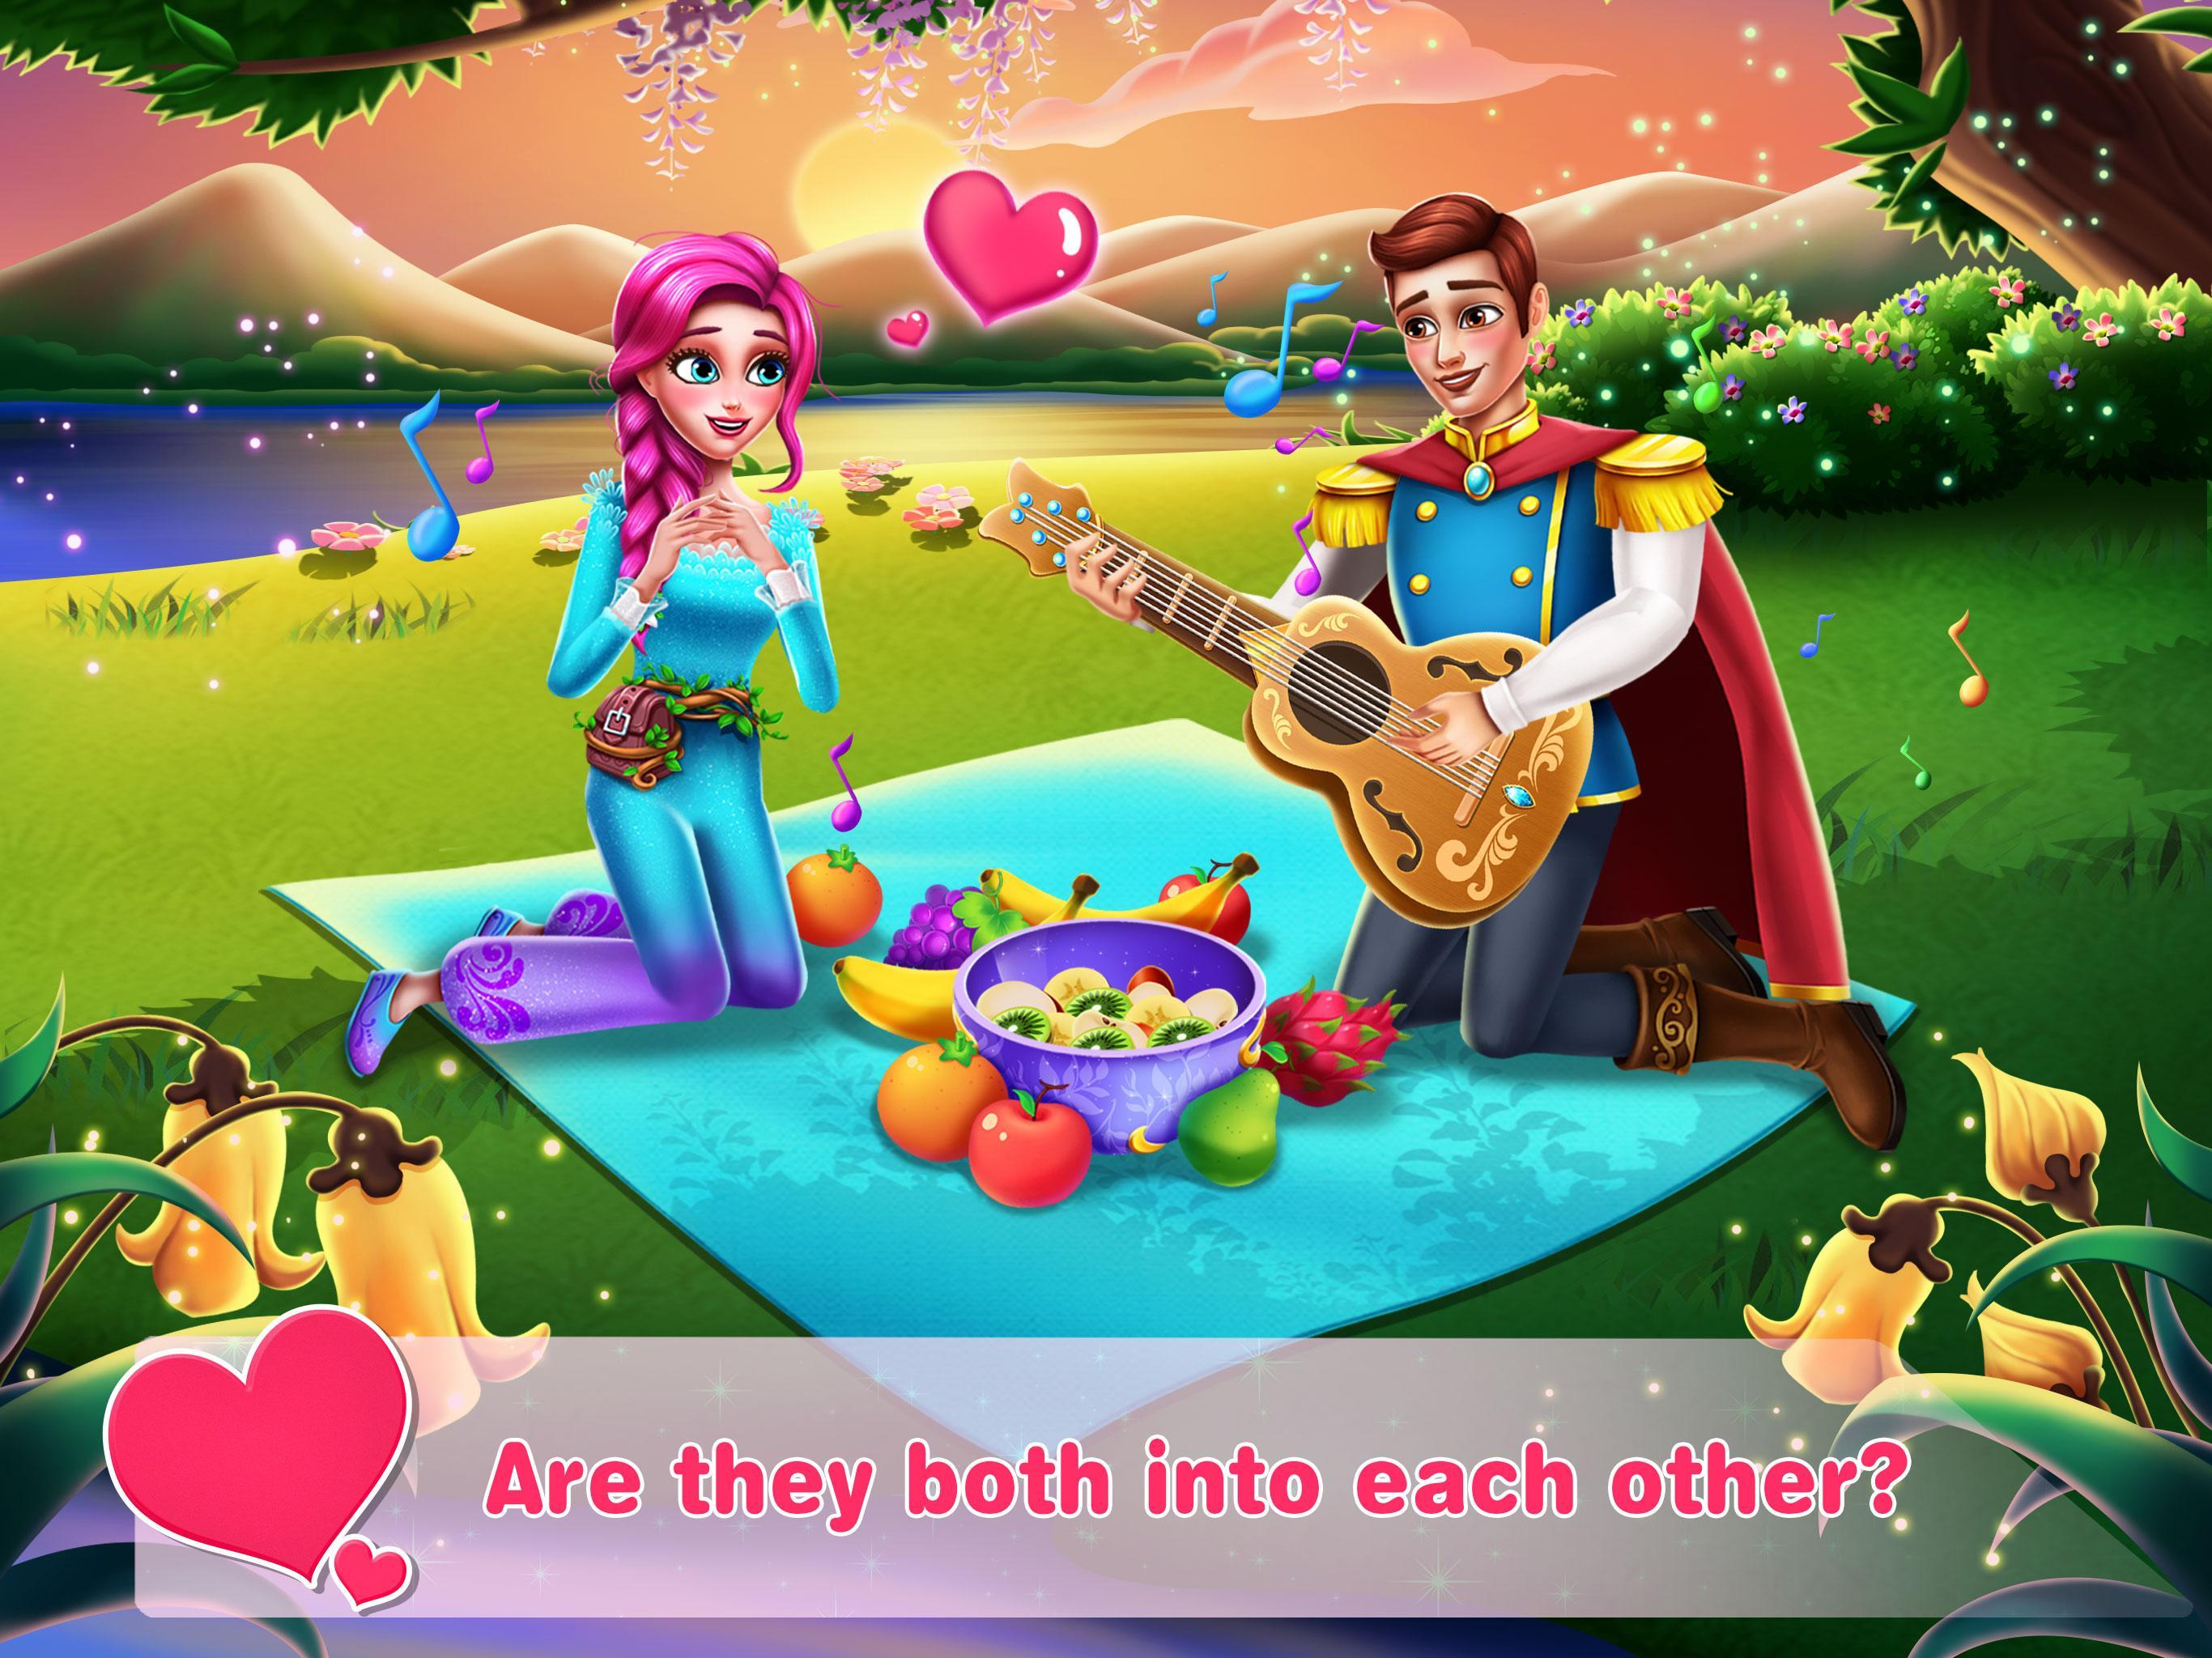 Играть Онлайн Бесплатно В Игру Принц И Принцесса